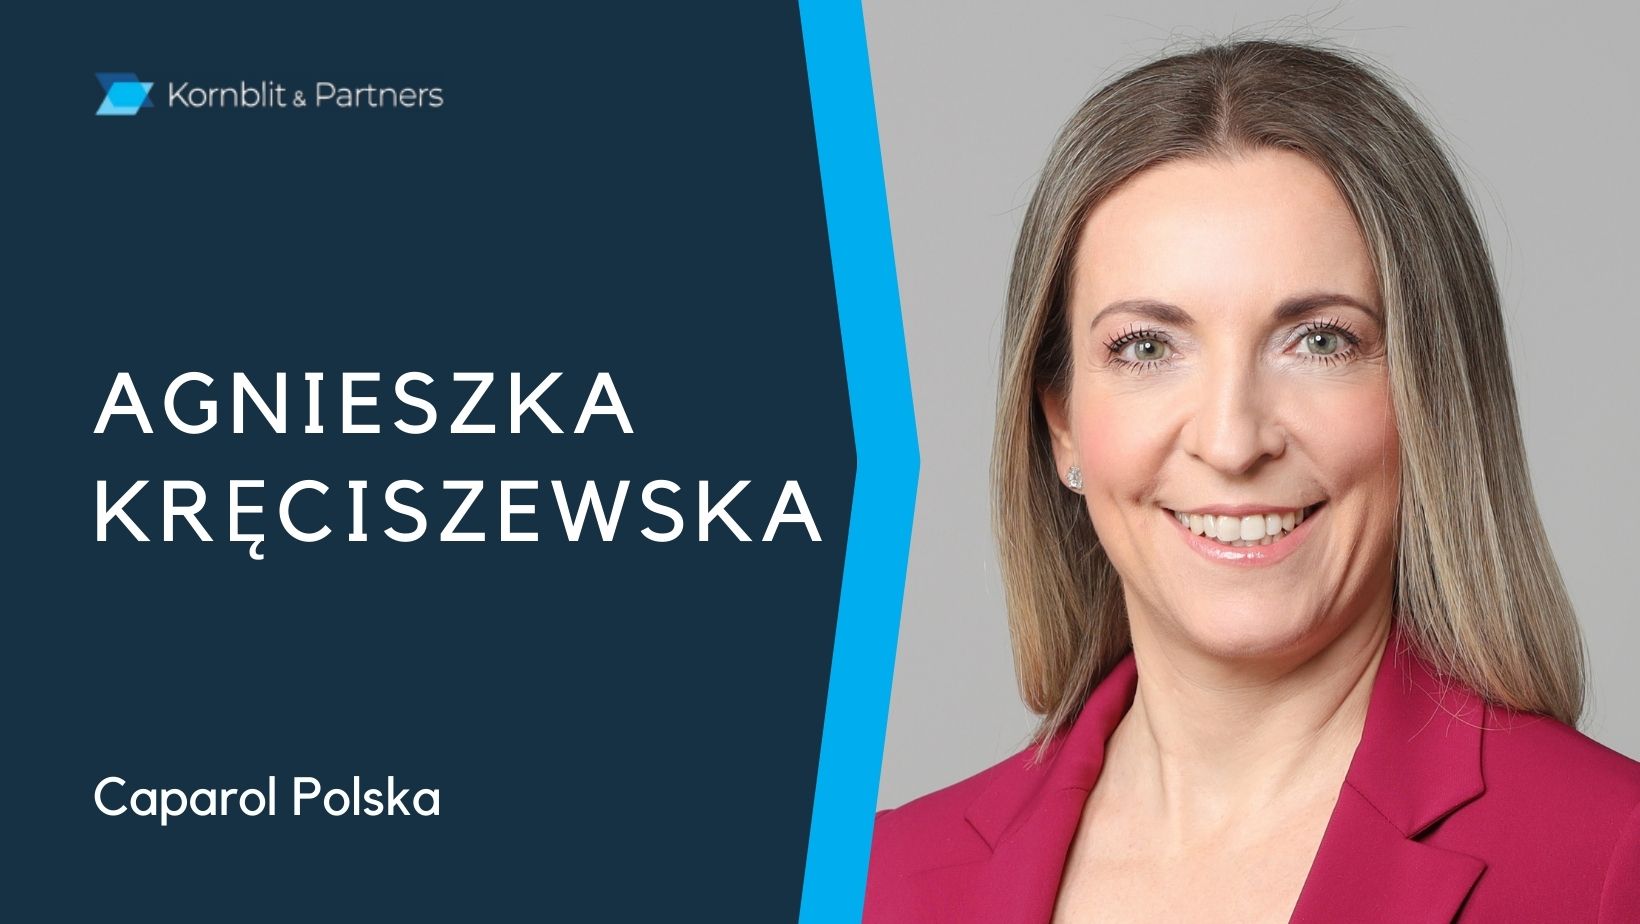 Agnieszka Kręciszewska, CFO Caparol Polska w wywiadzie dla Kornblit Talks